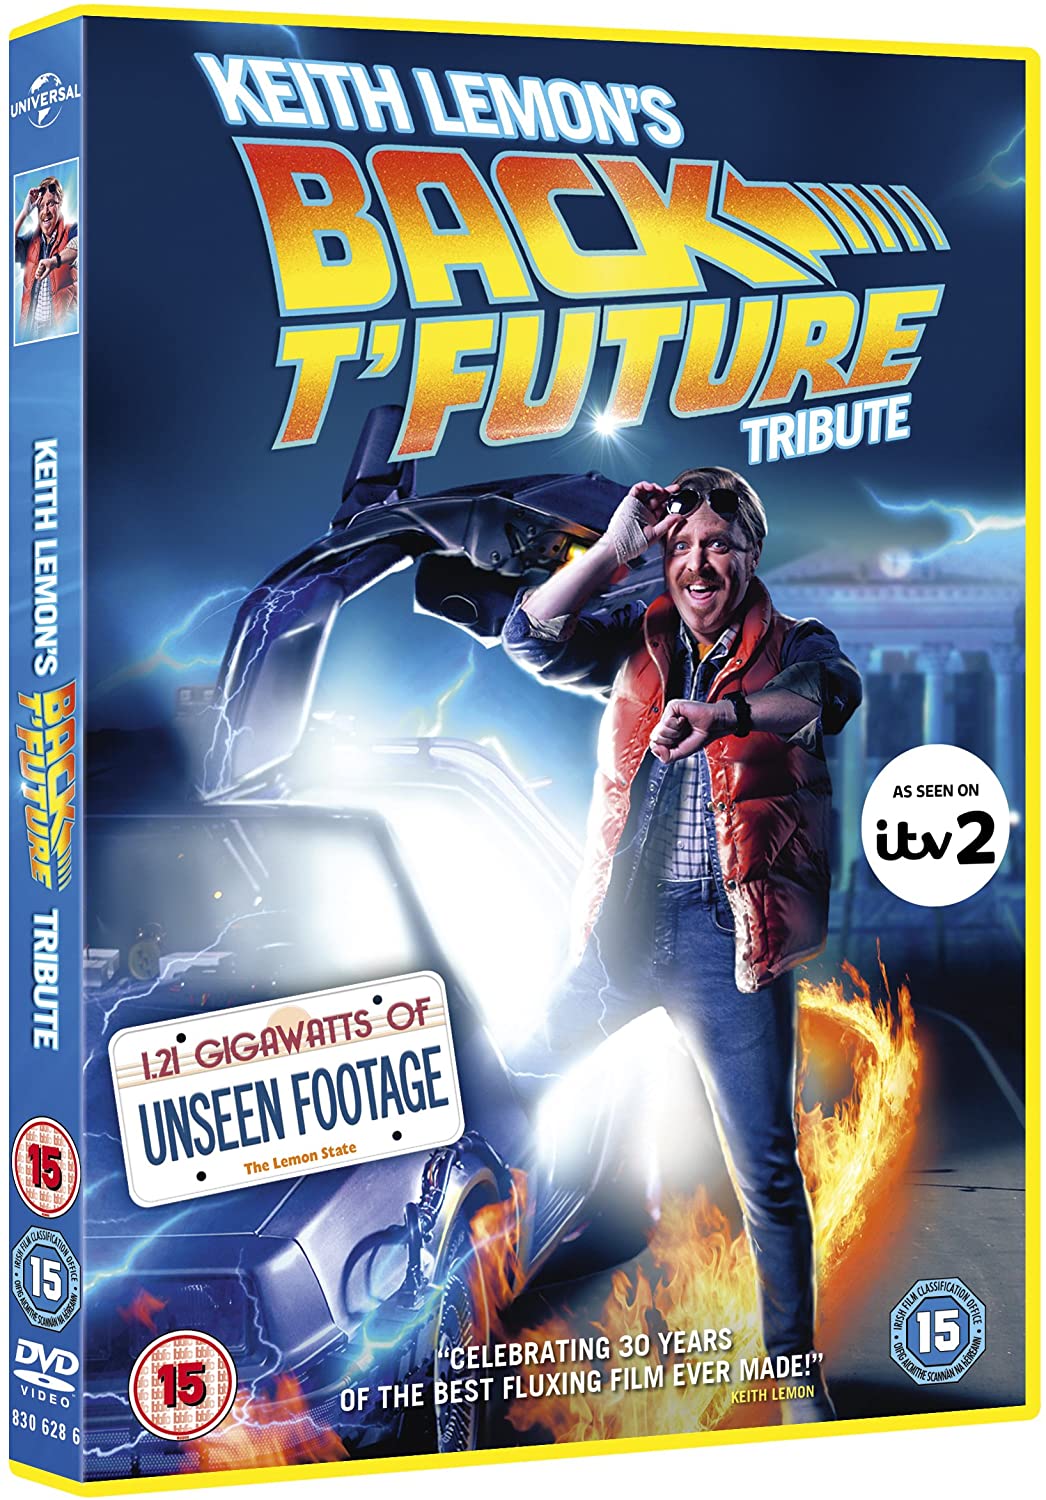 Keith Lemon's Back T'Future Tribute [DVD] [2015]